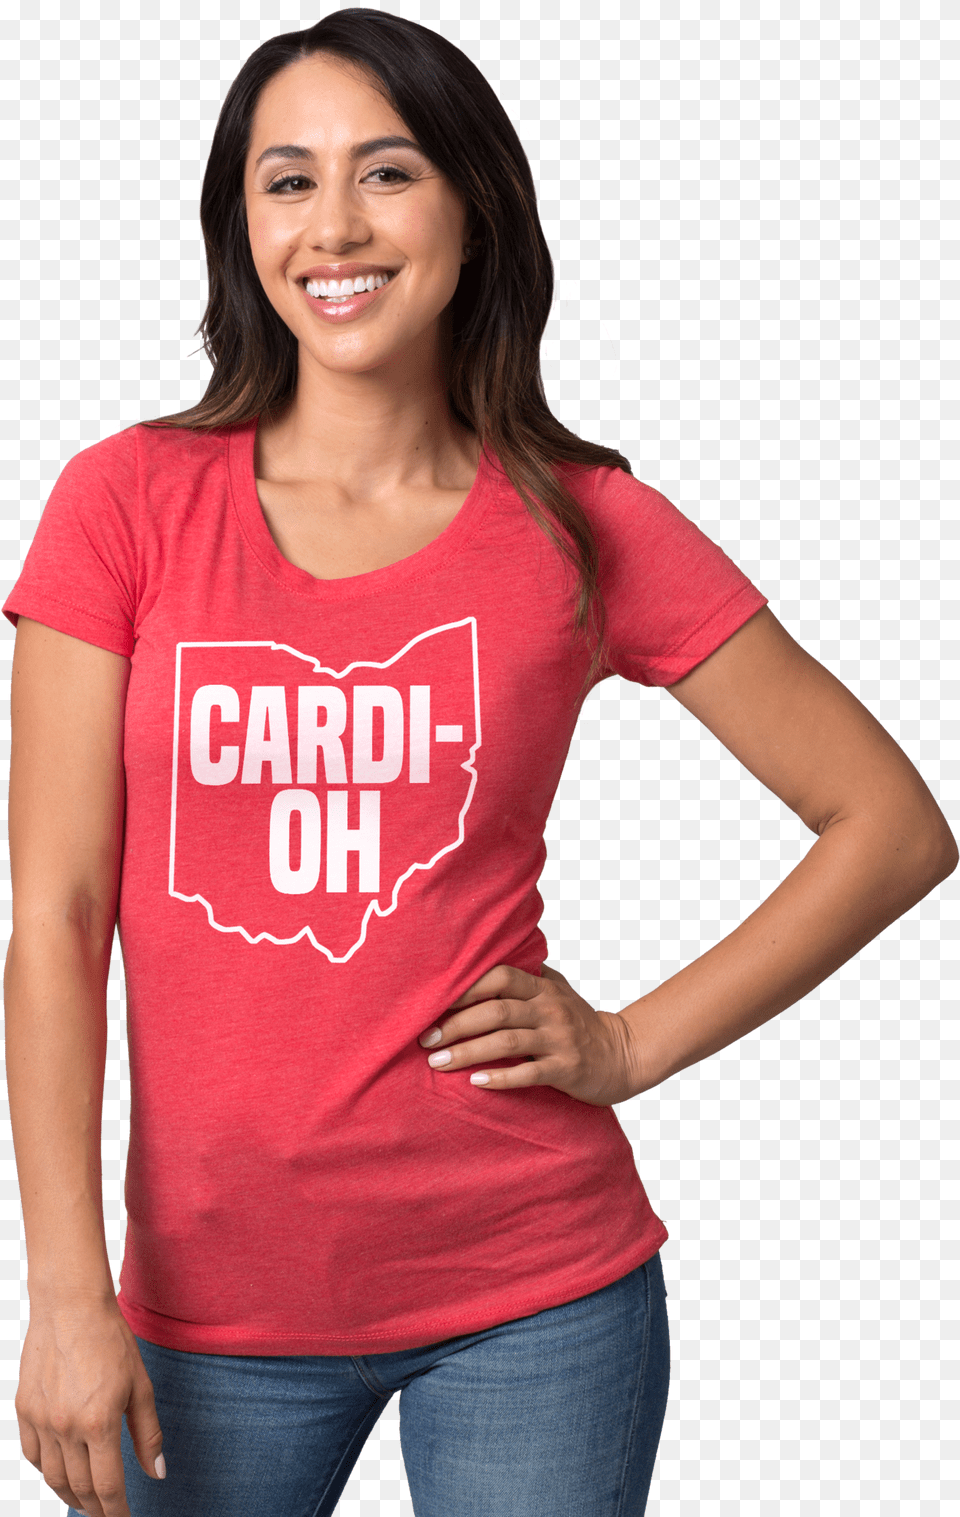 Cardi Oh Cincinnati, Clothing, T-shirt, Adult, Smile Png Image